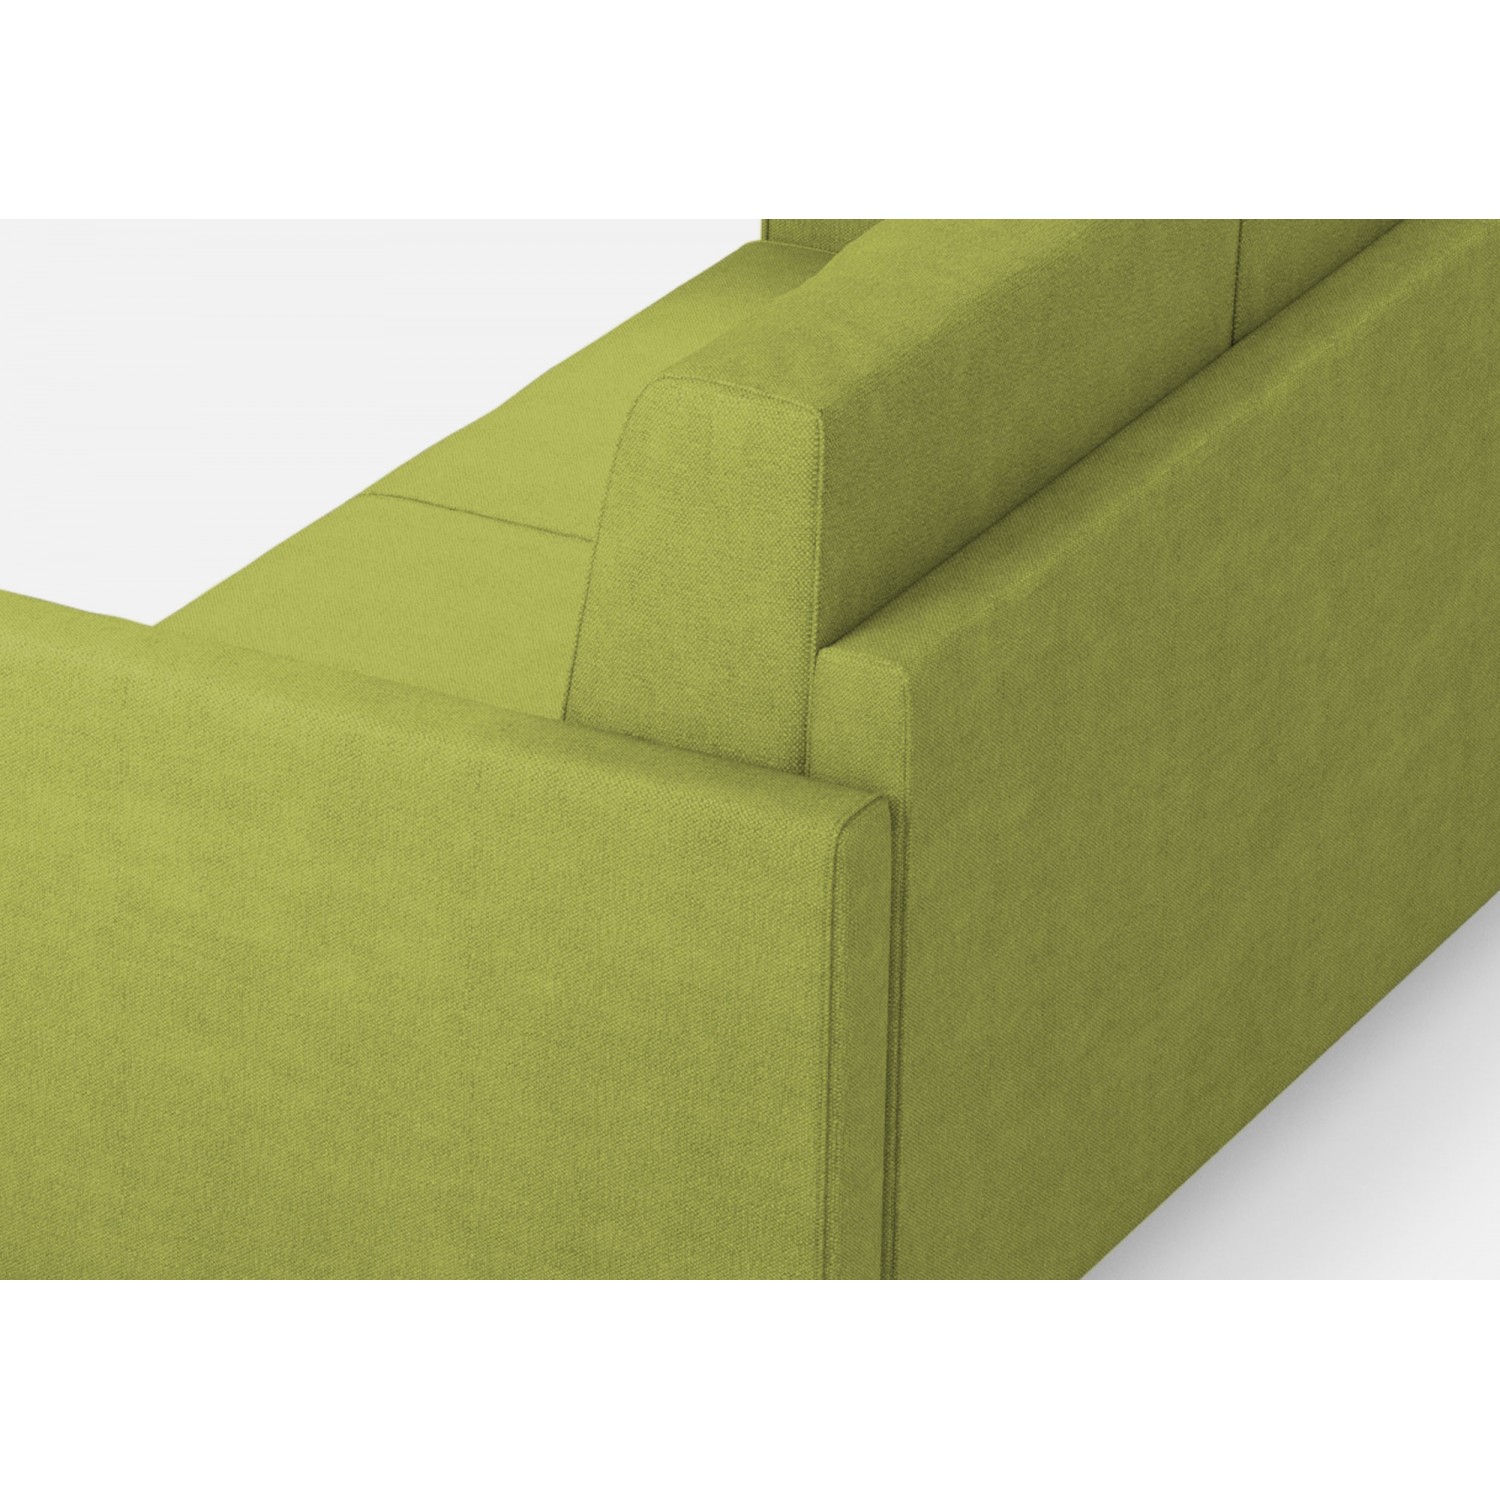 Ityhome Divano Karay 3 posti (tre sedute da 60cm)+ angolo + divano 2 posti medio (due sedute da 70cm) misure esterne L.281x241 colore verde